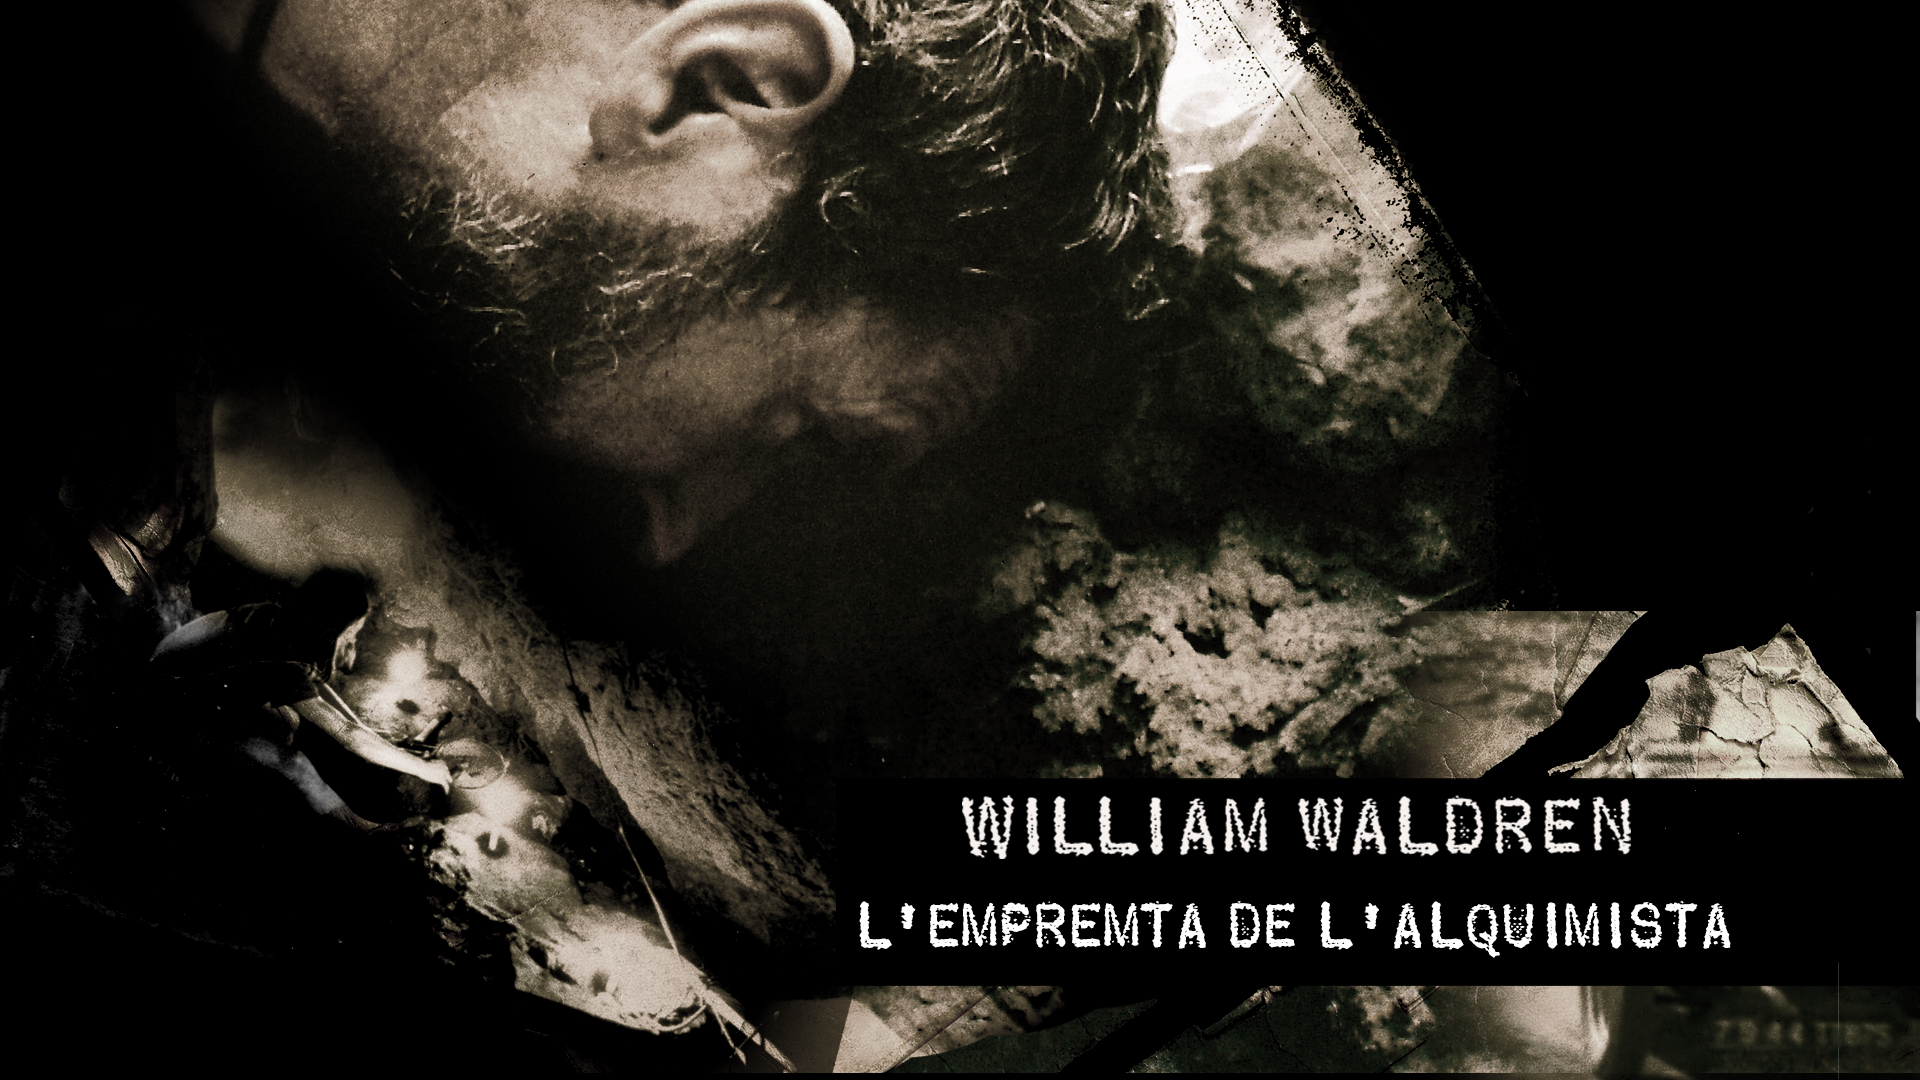 William Waldren. The alchemist’s imprint